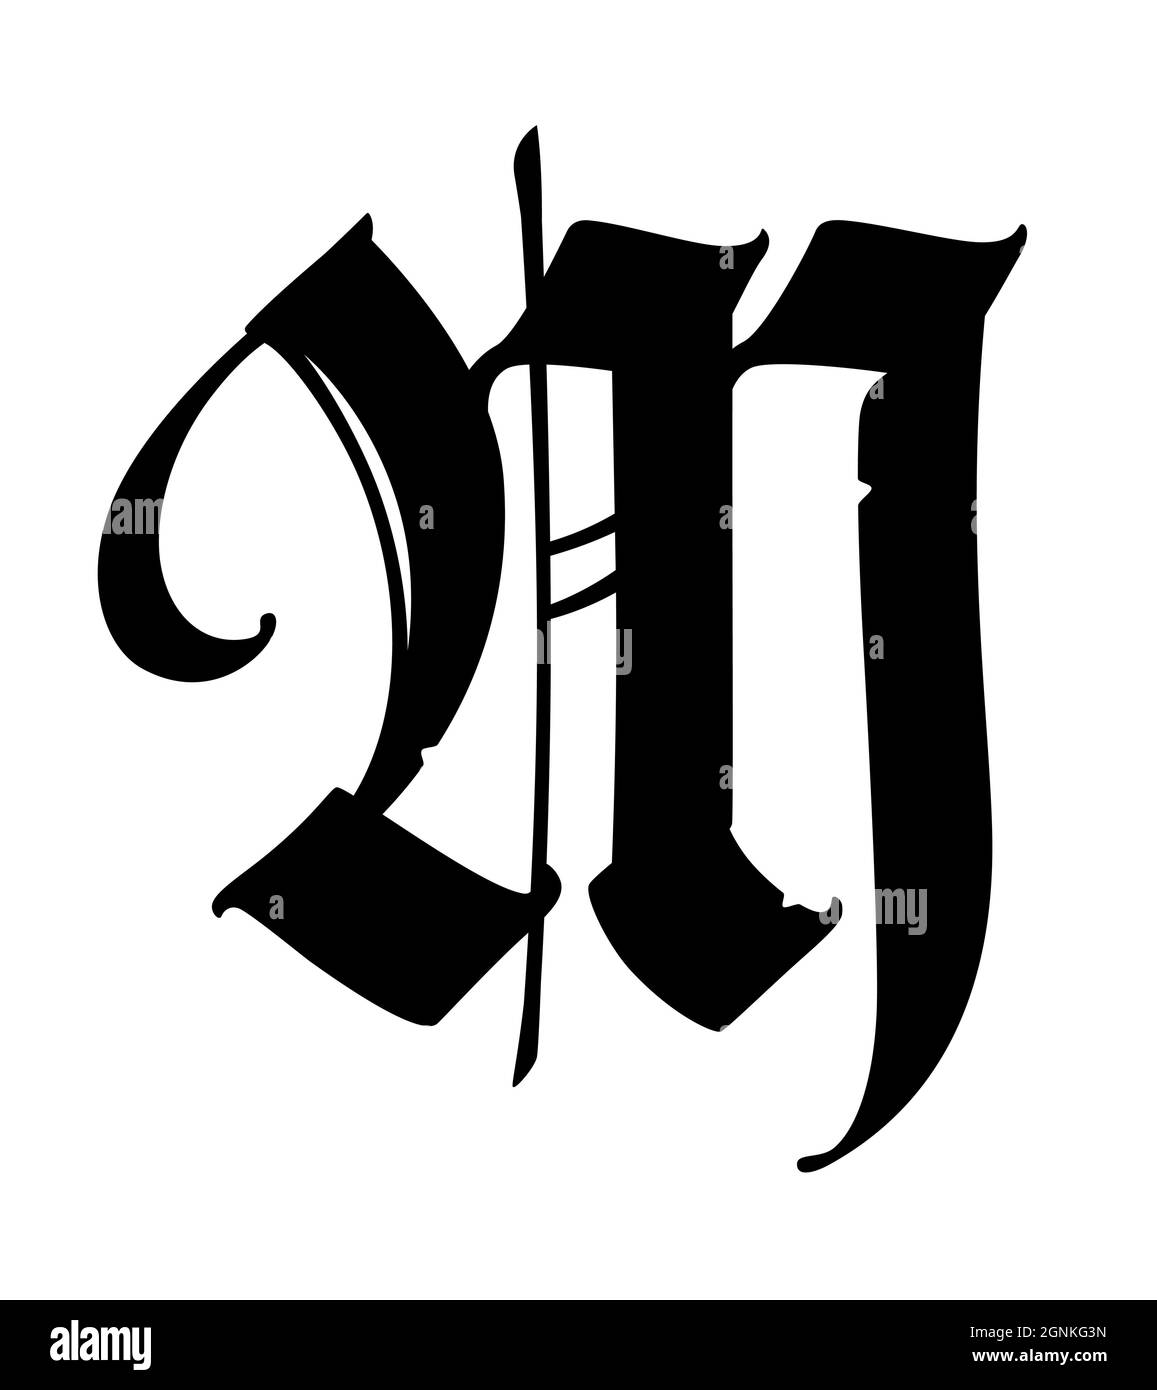 Lettre M de style gothique. Vecteur. Alphabet. Le symbole est isolé sur un fond blanc. Calligraphie et lettrage. Lettre latine médiévale. Logo f Illustration de Vecteur